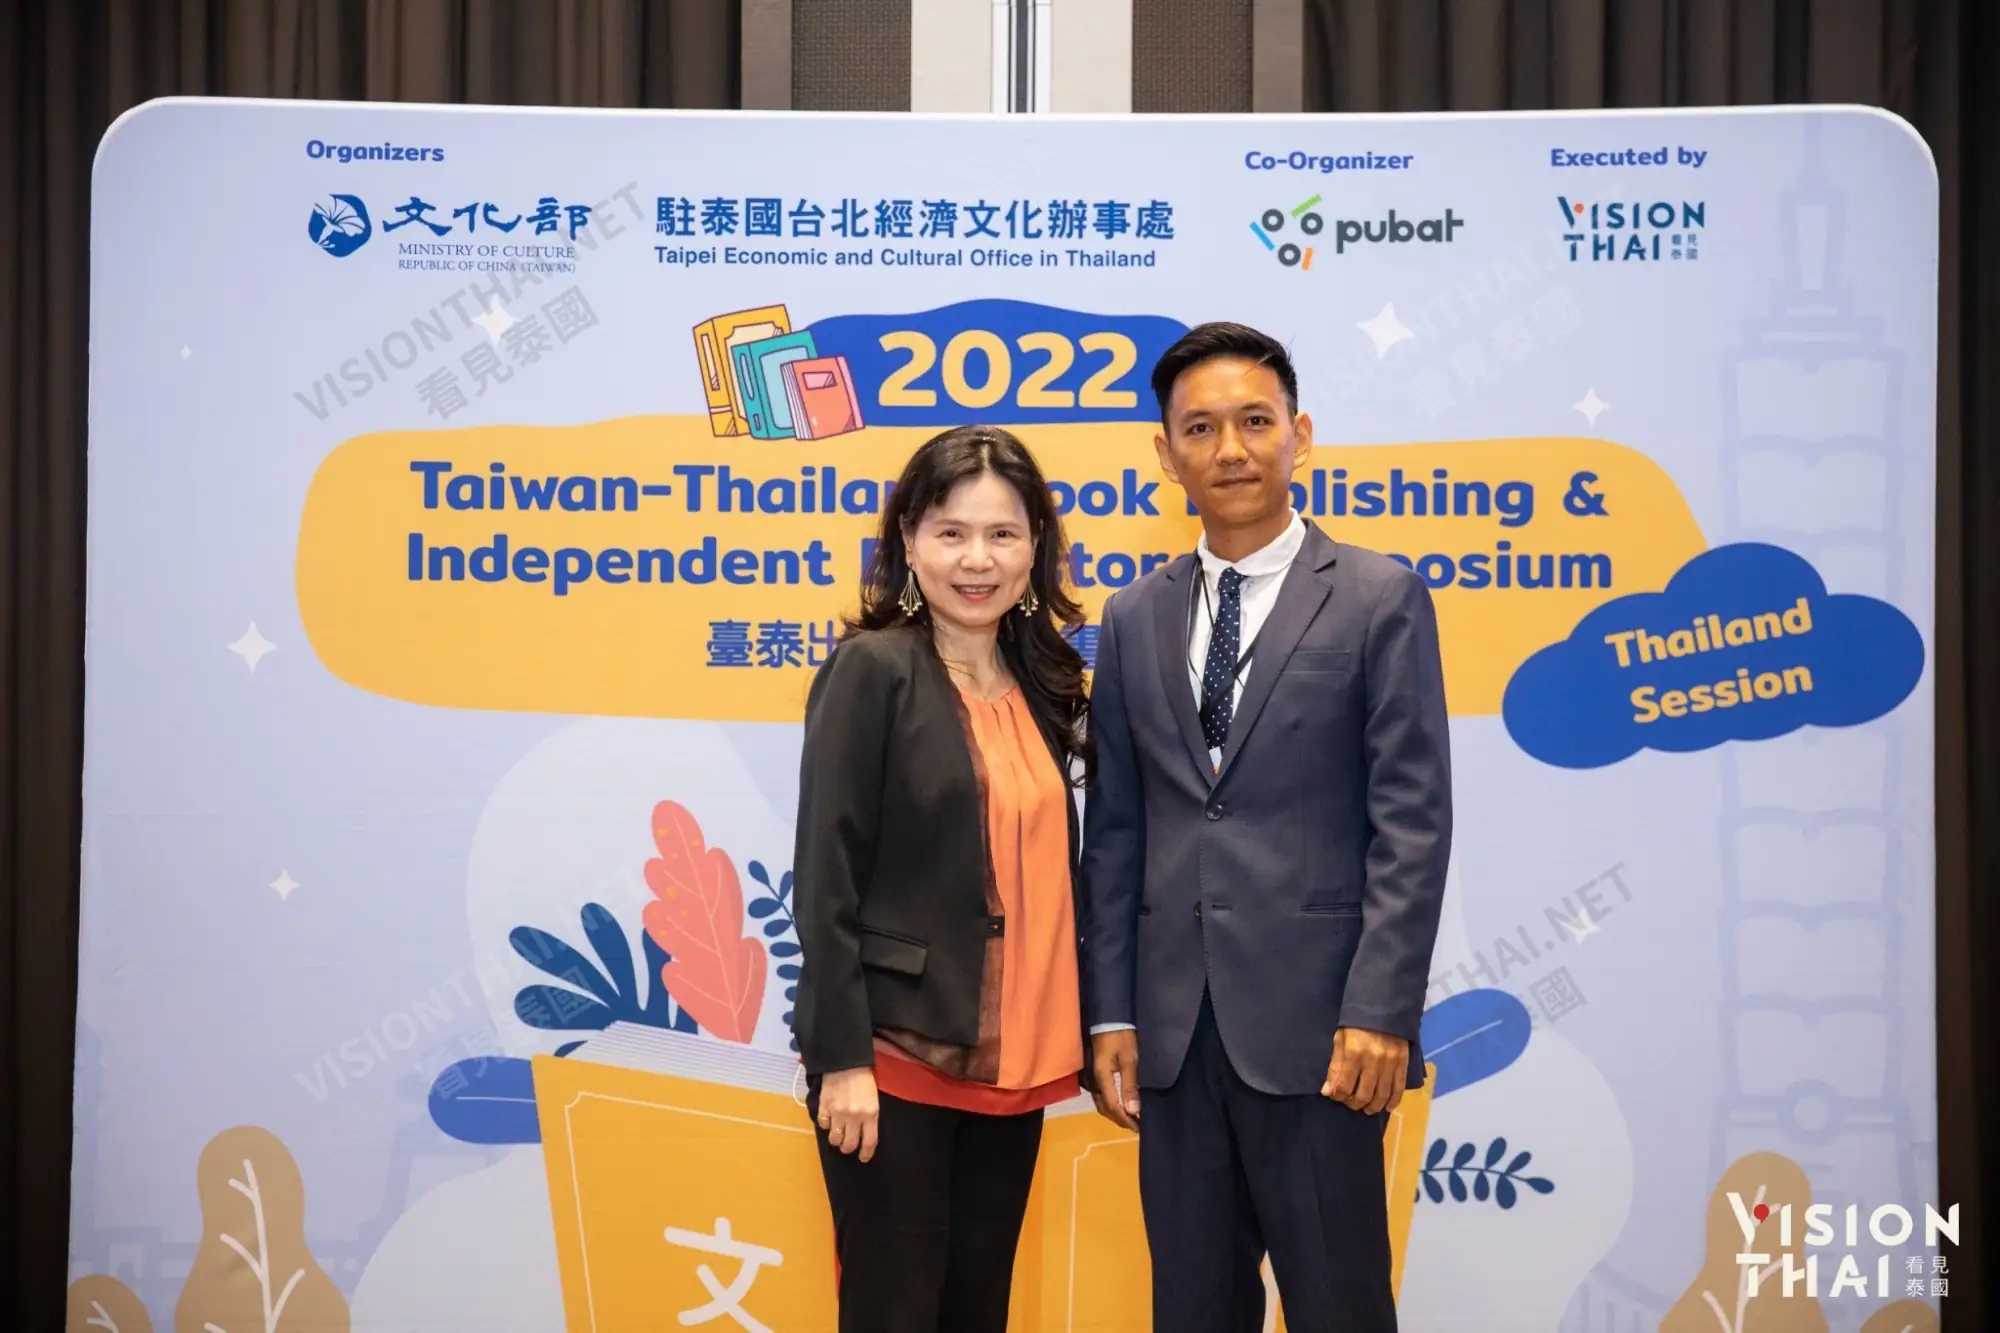 臺泰出版與獨立書店座談會(Taiwan-Thailand Book Publishing & Independent Bookstore Symposium)於今(2022)年11月23日在曼谷圓滿落幕。